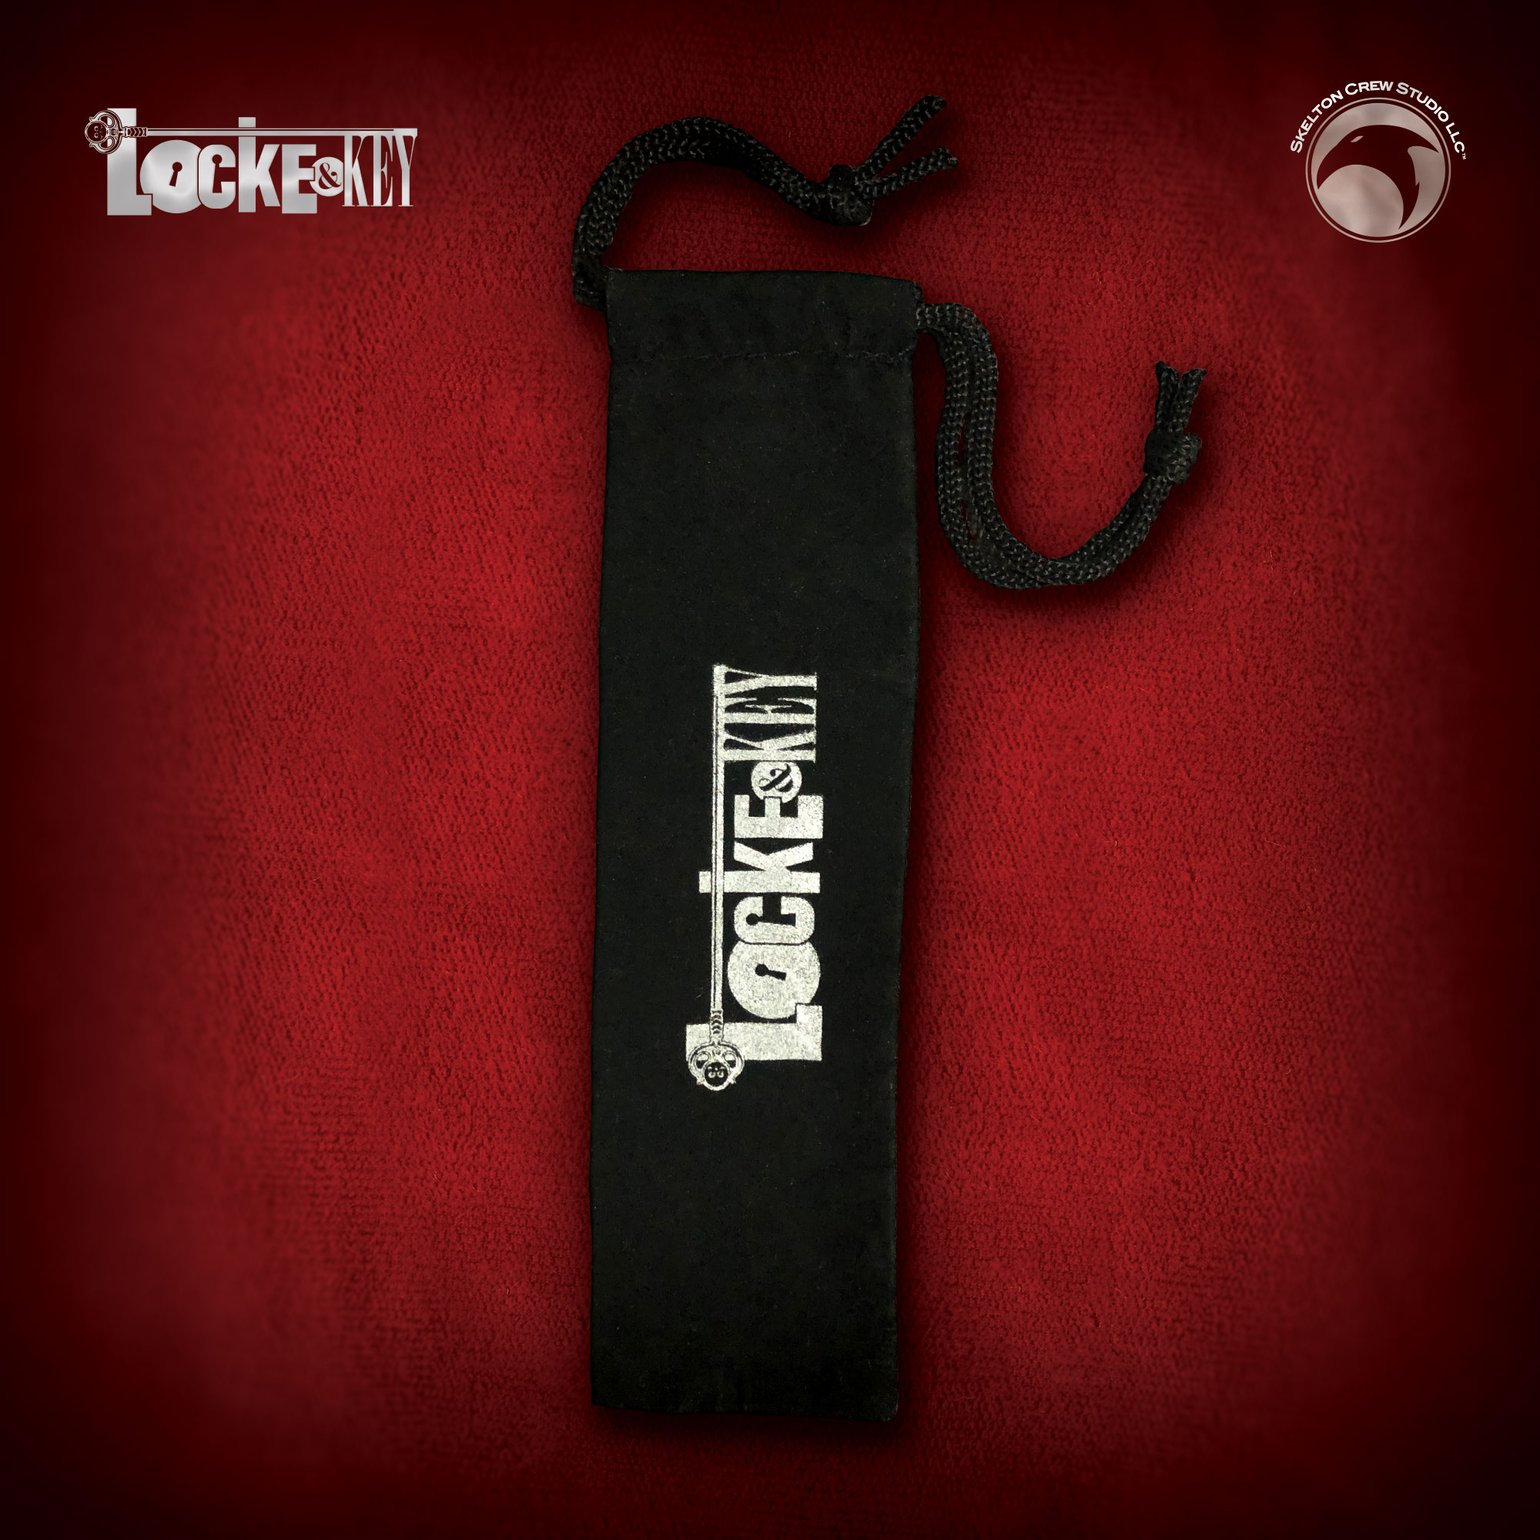 Image of Locke & Key: Velveteen bag!